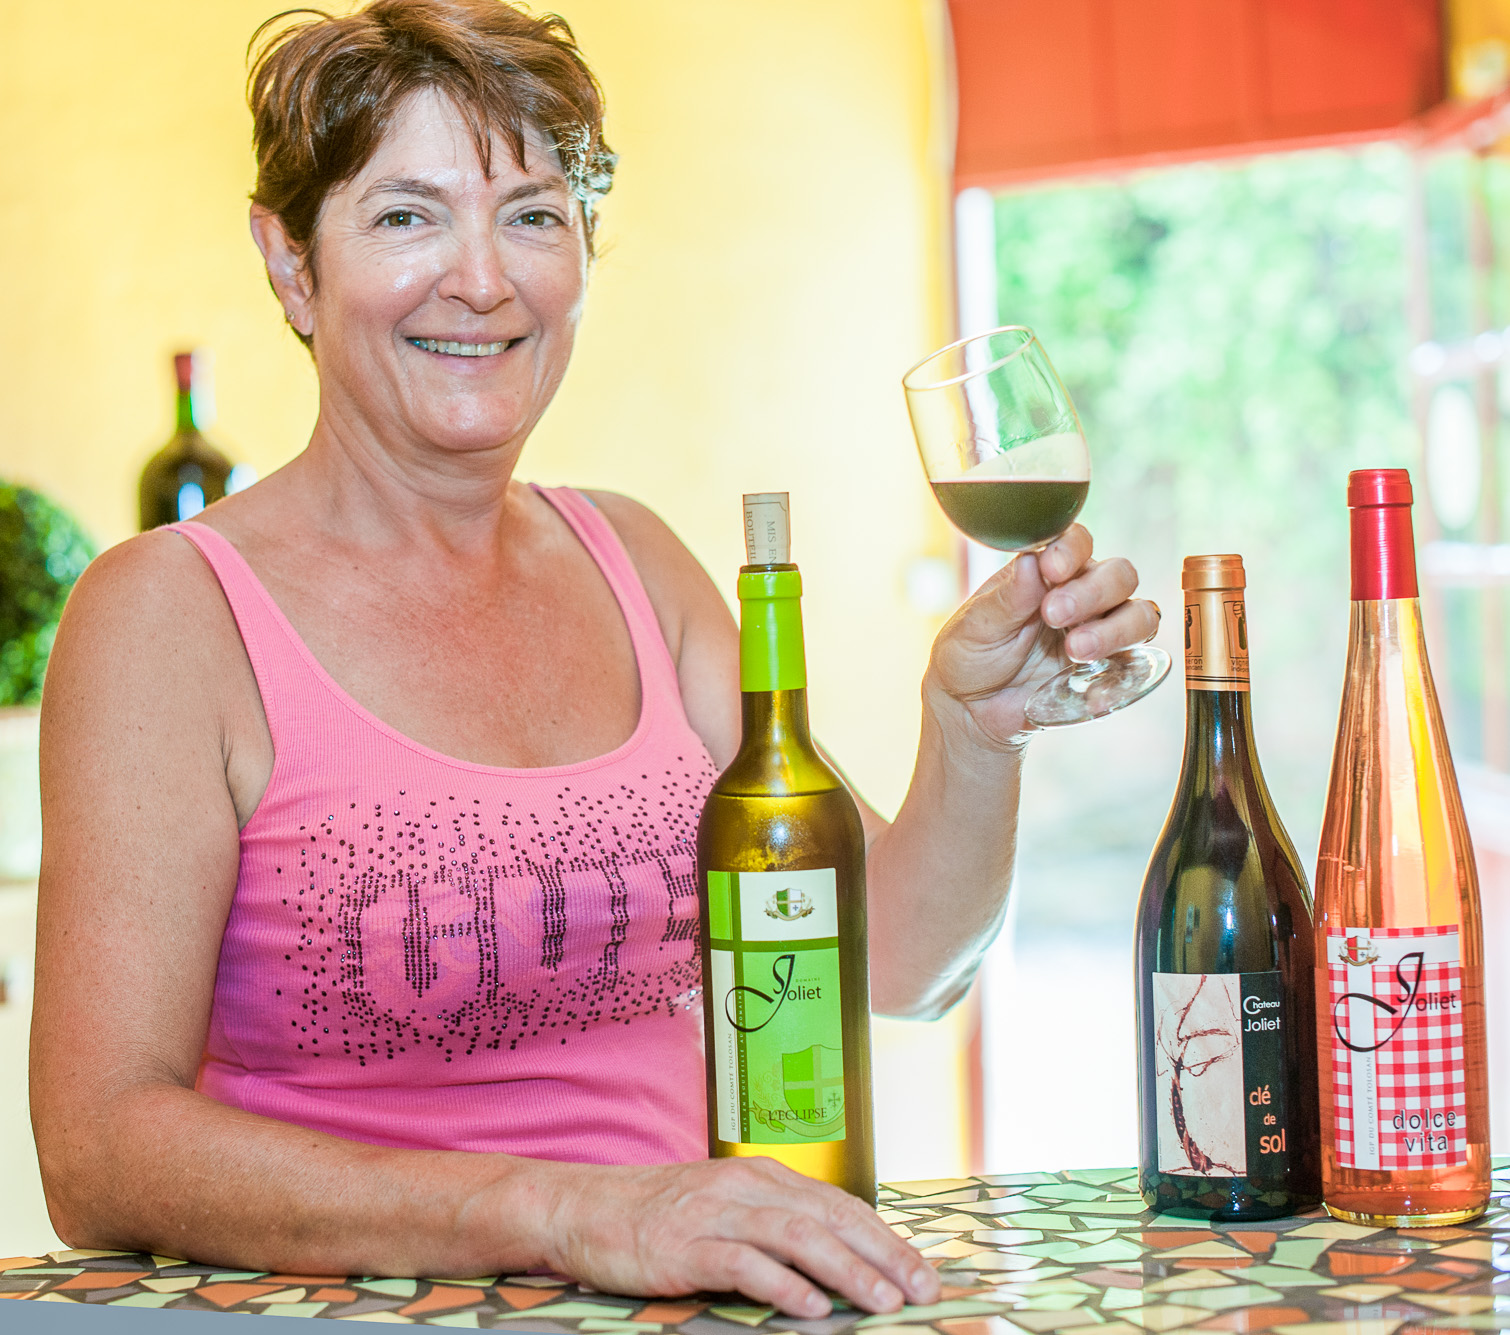 Château de Joliet. Marie Ange Soriano nous présente son vin rouge dans sa salle de dégustation.